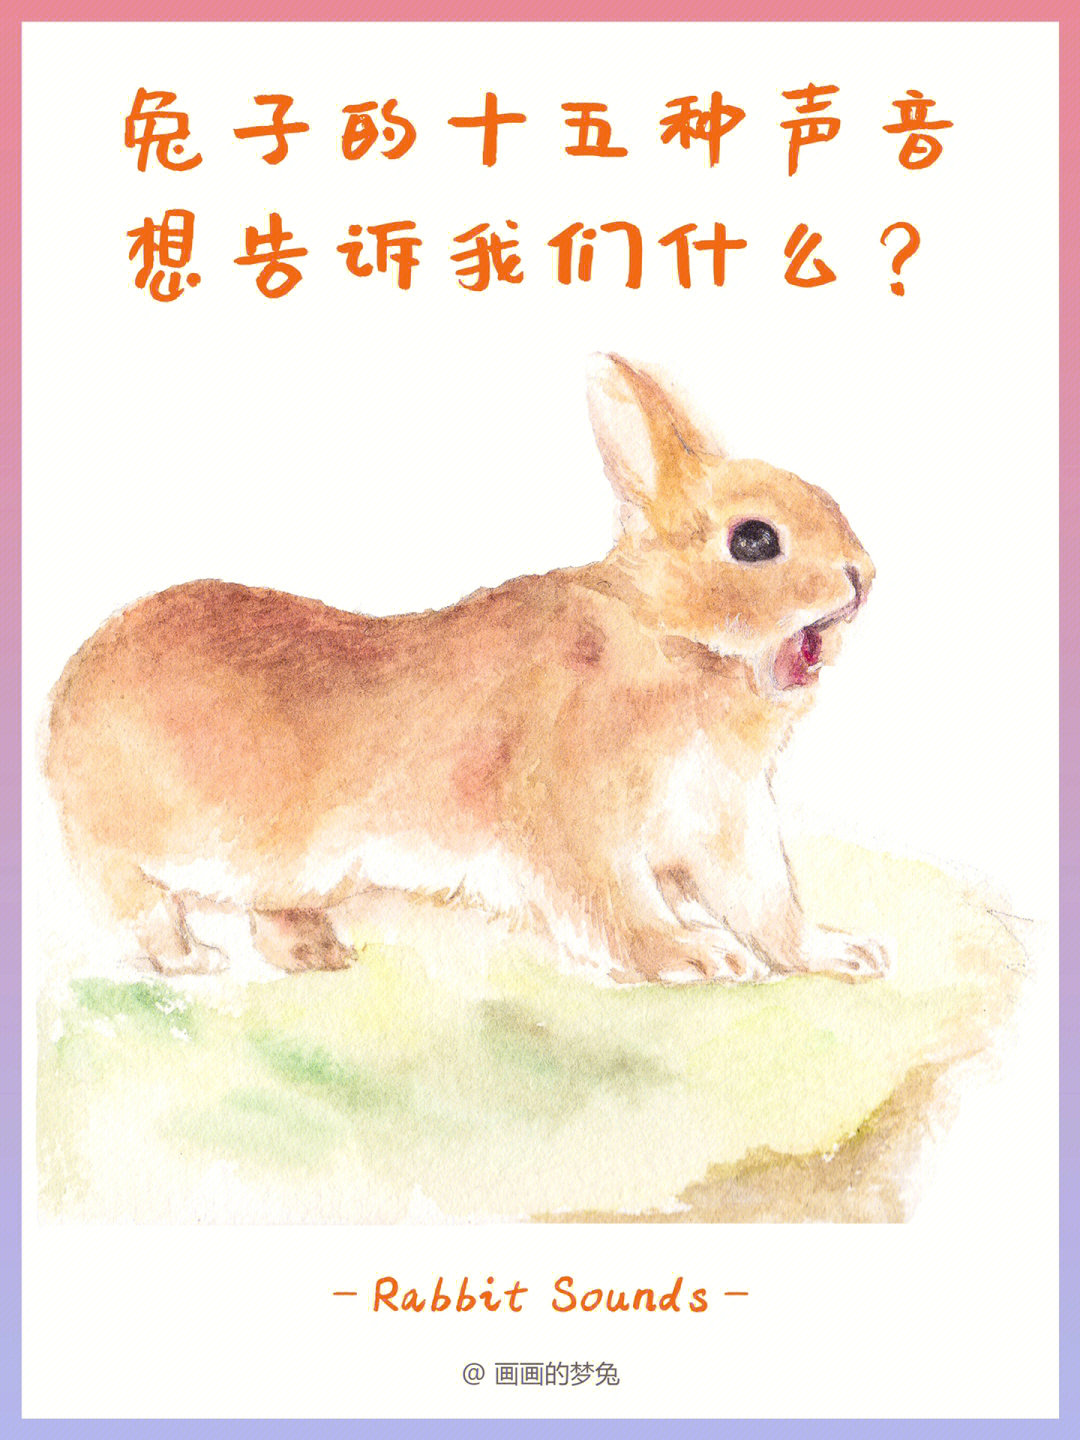 兔子的十五种声音,想告诉我们什么?